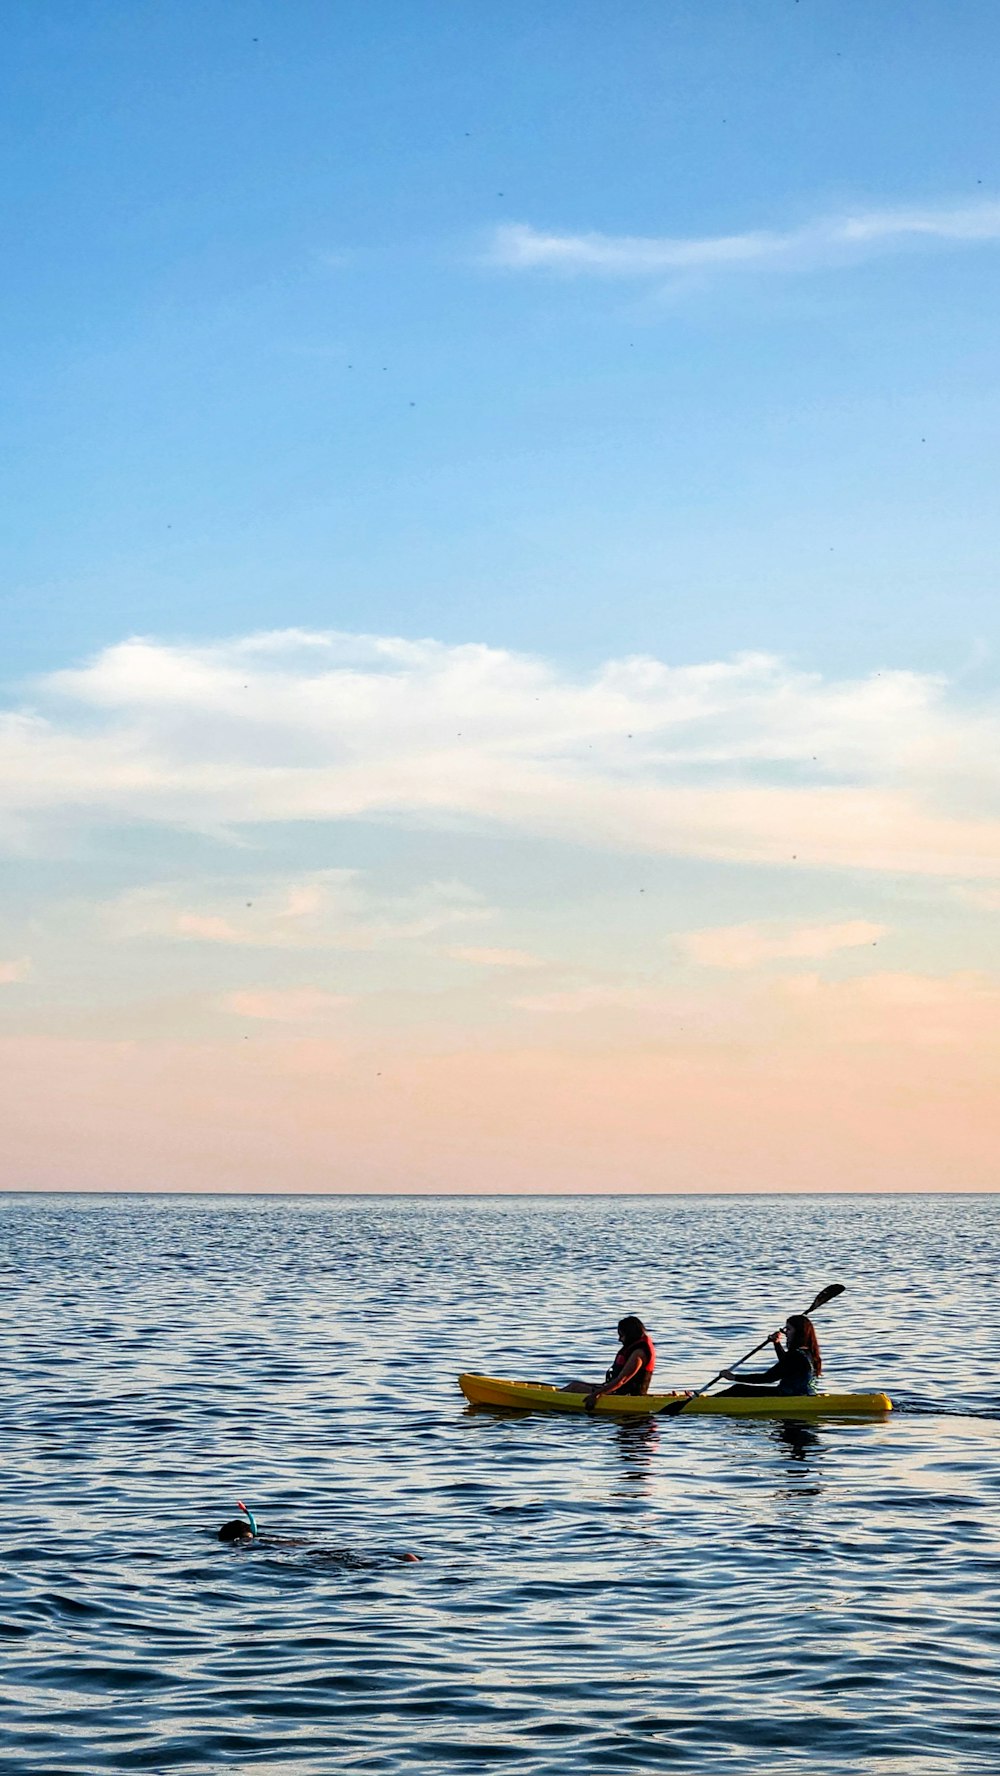 Un paio di persone su un kayak nell'acqua